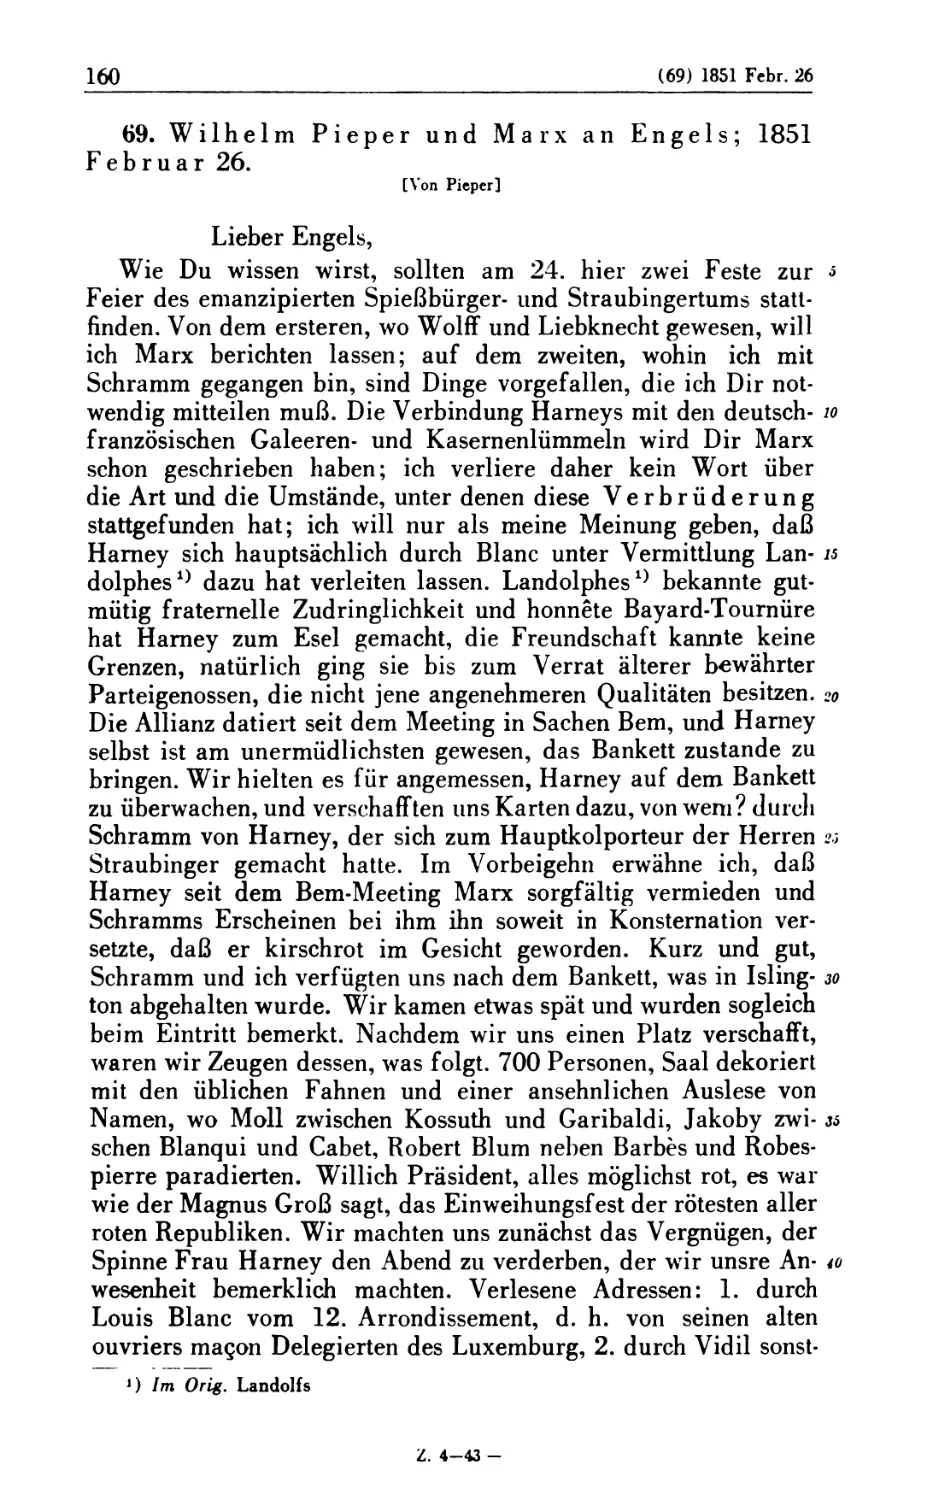 69. Wilhelm Pieper und Marx an Engels; 1851 Februar 26